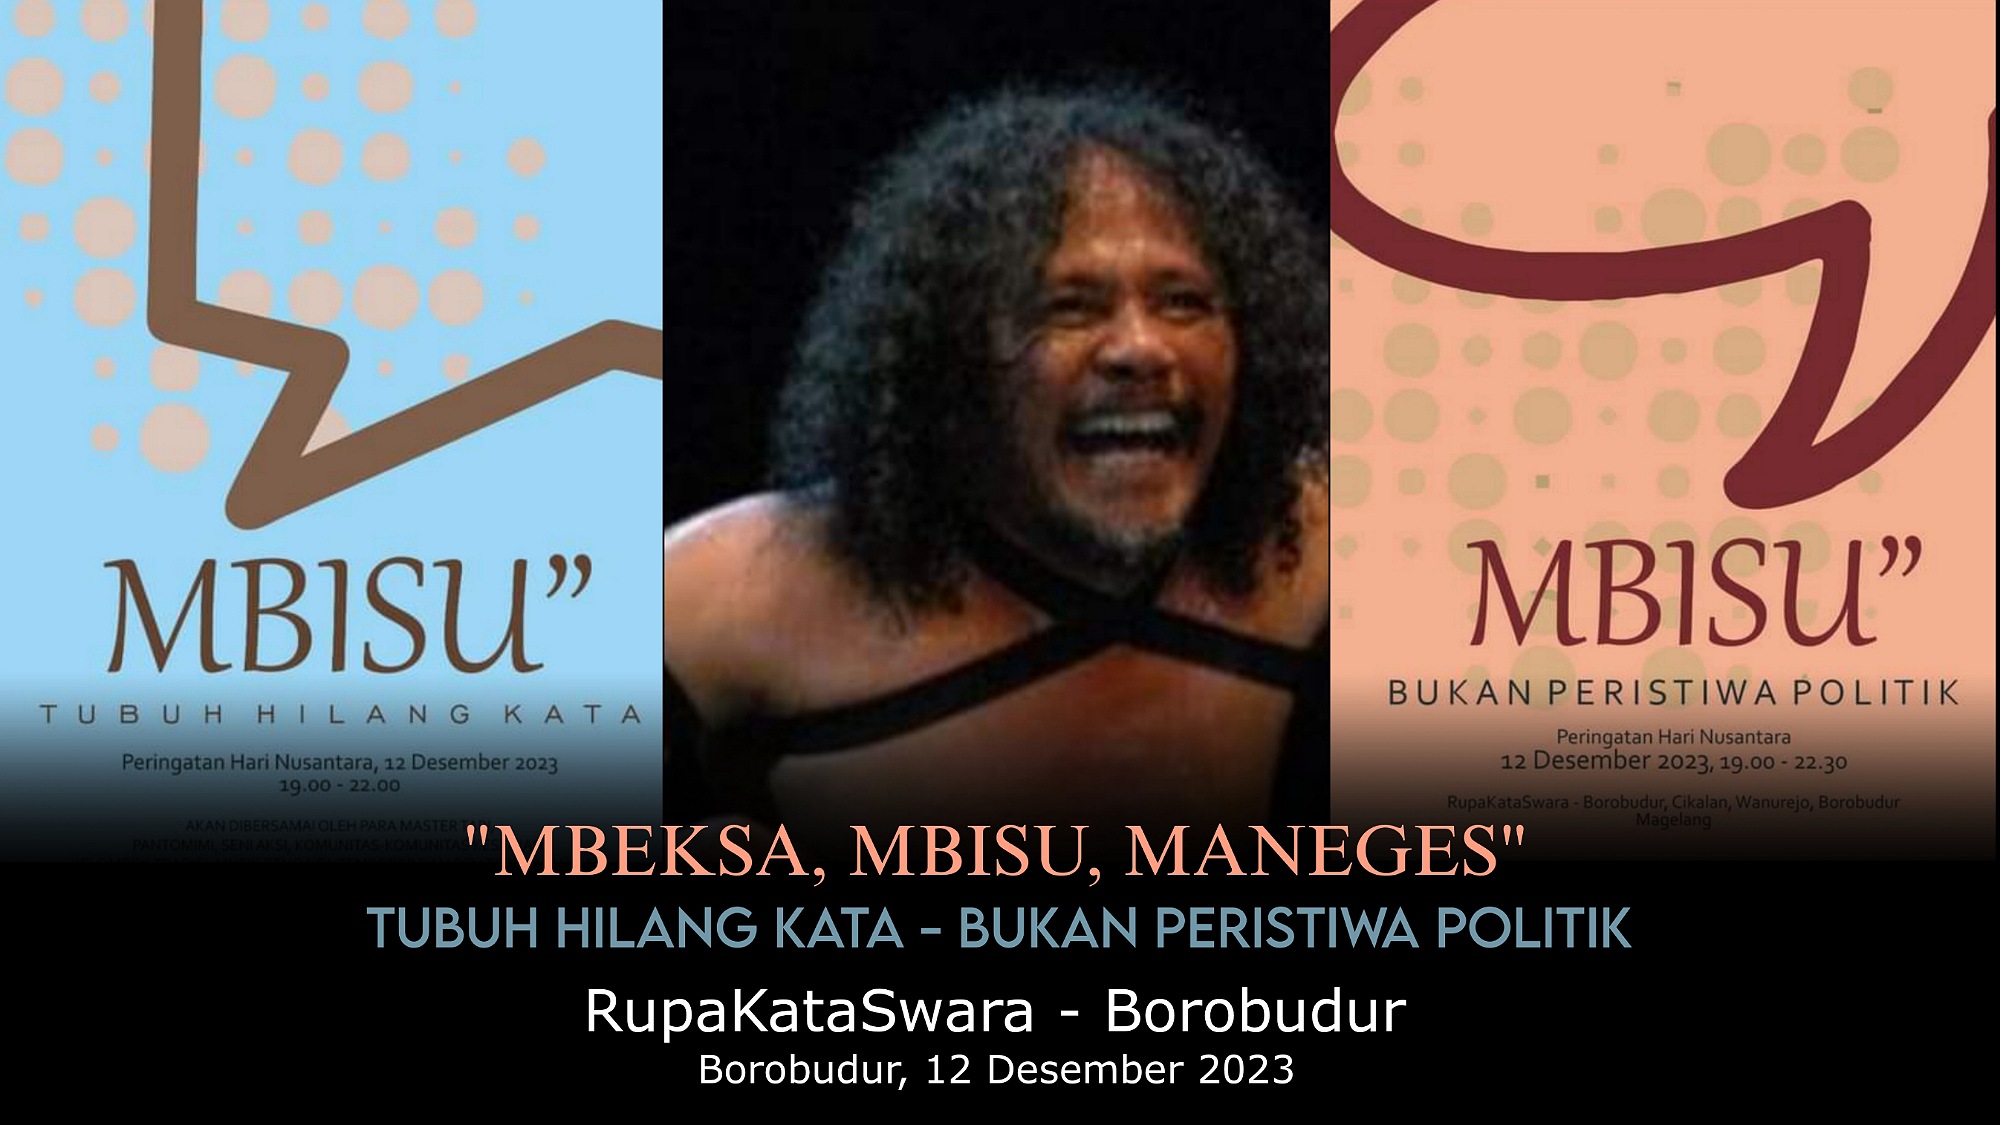 Peringatan Hari Nusantara oleh RupaKataSwara Borobudur, Bertajuk “Mbeksa Mbisu Maneges”